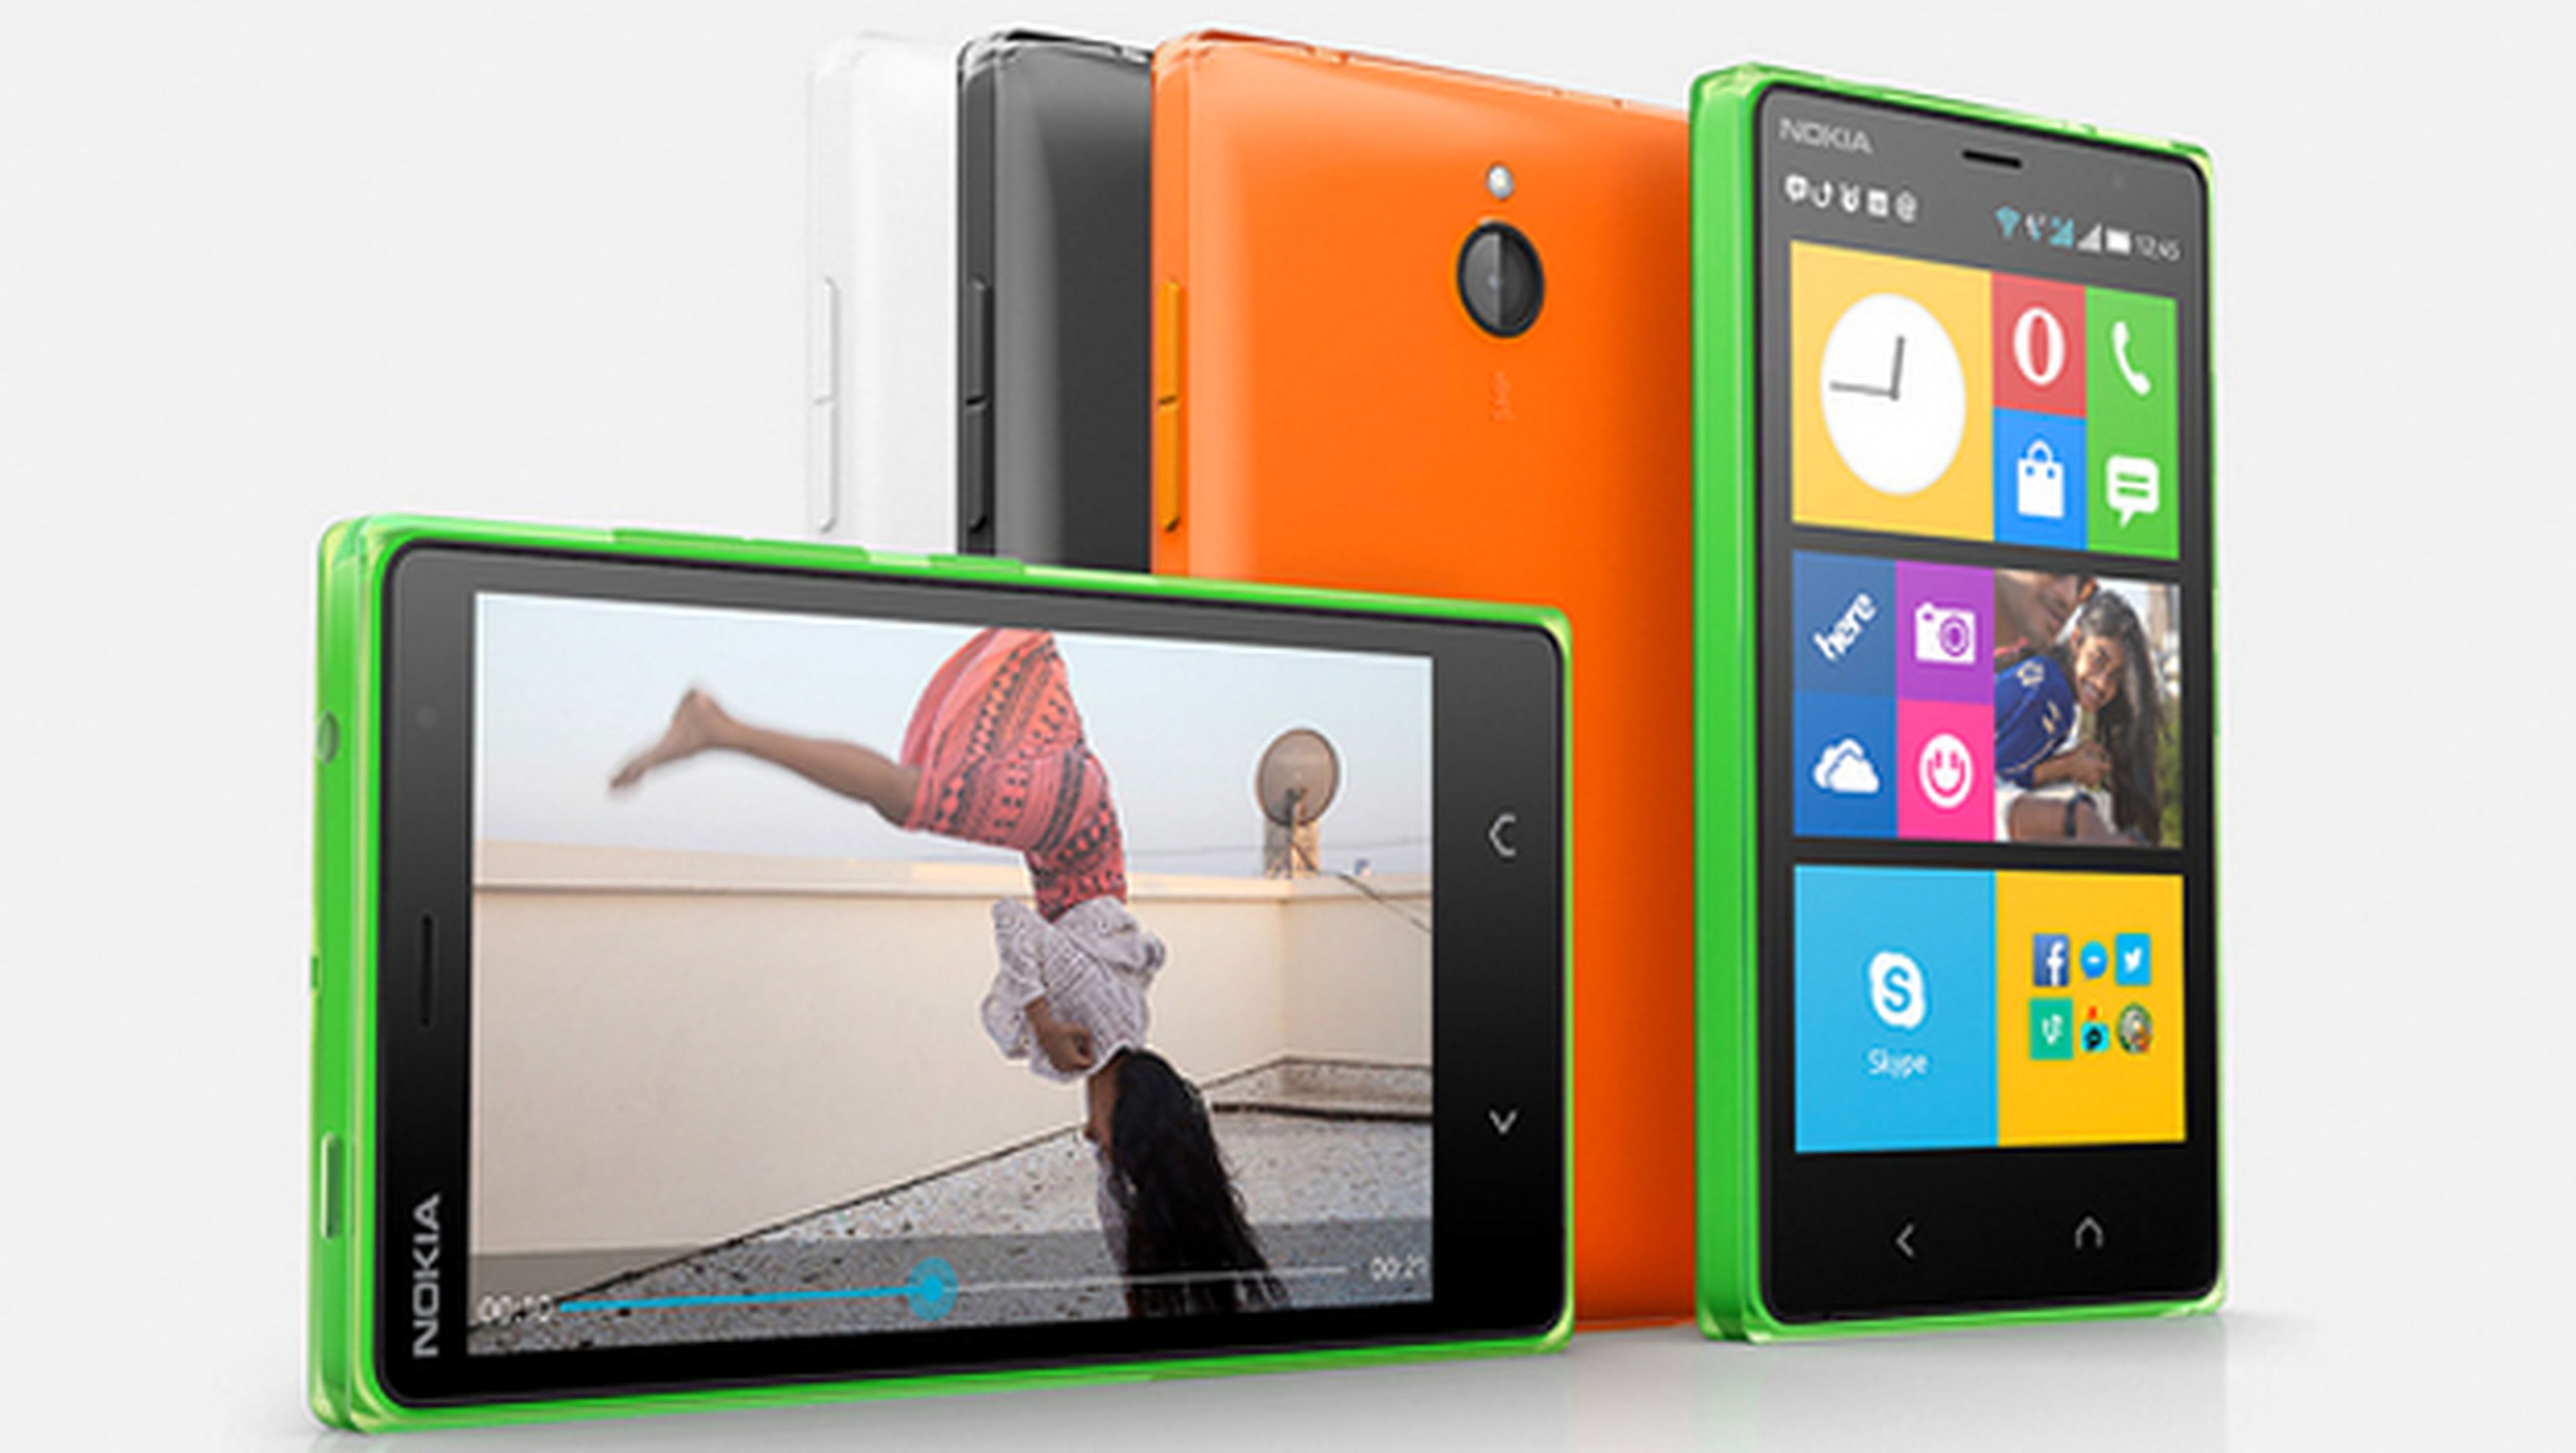 Nokia presenta el Nokia X2, su nuevo smartphone con Android